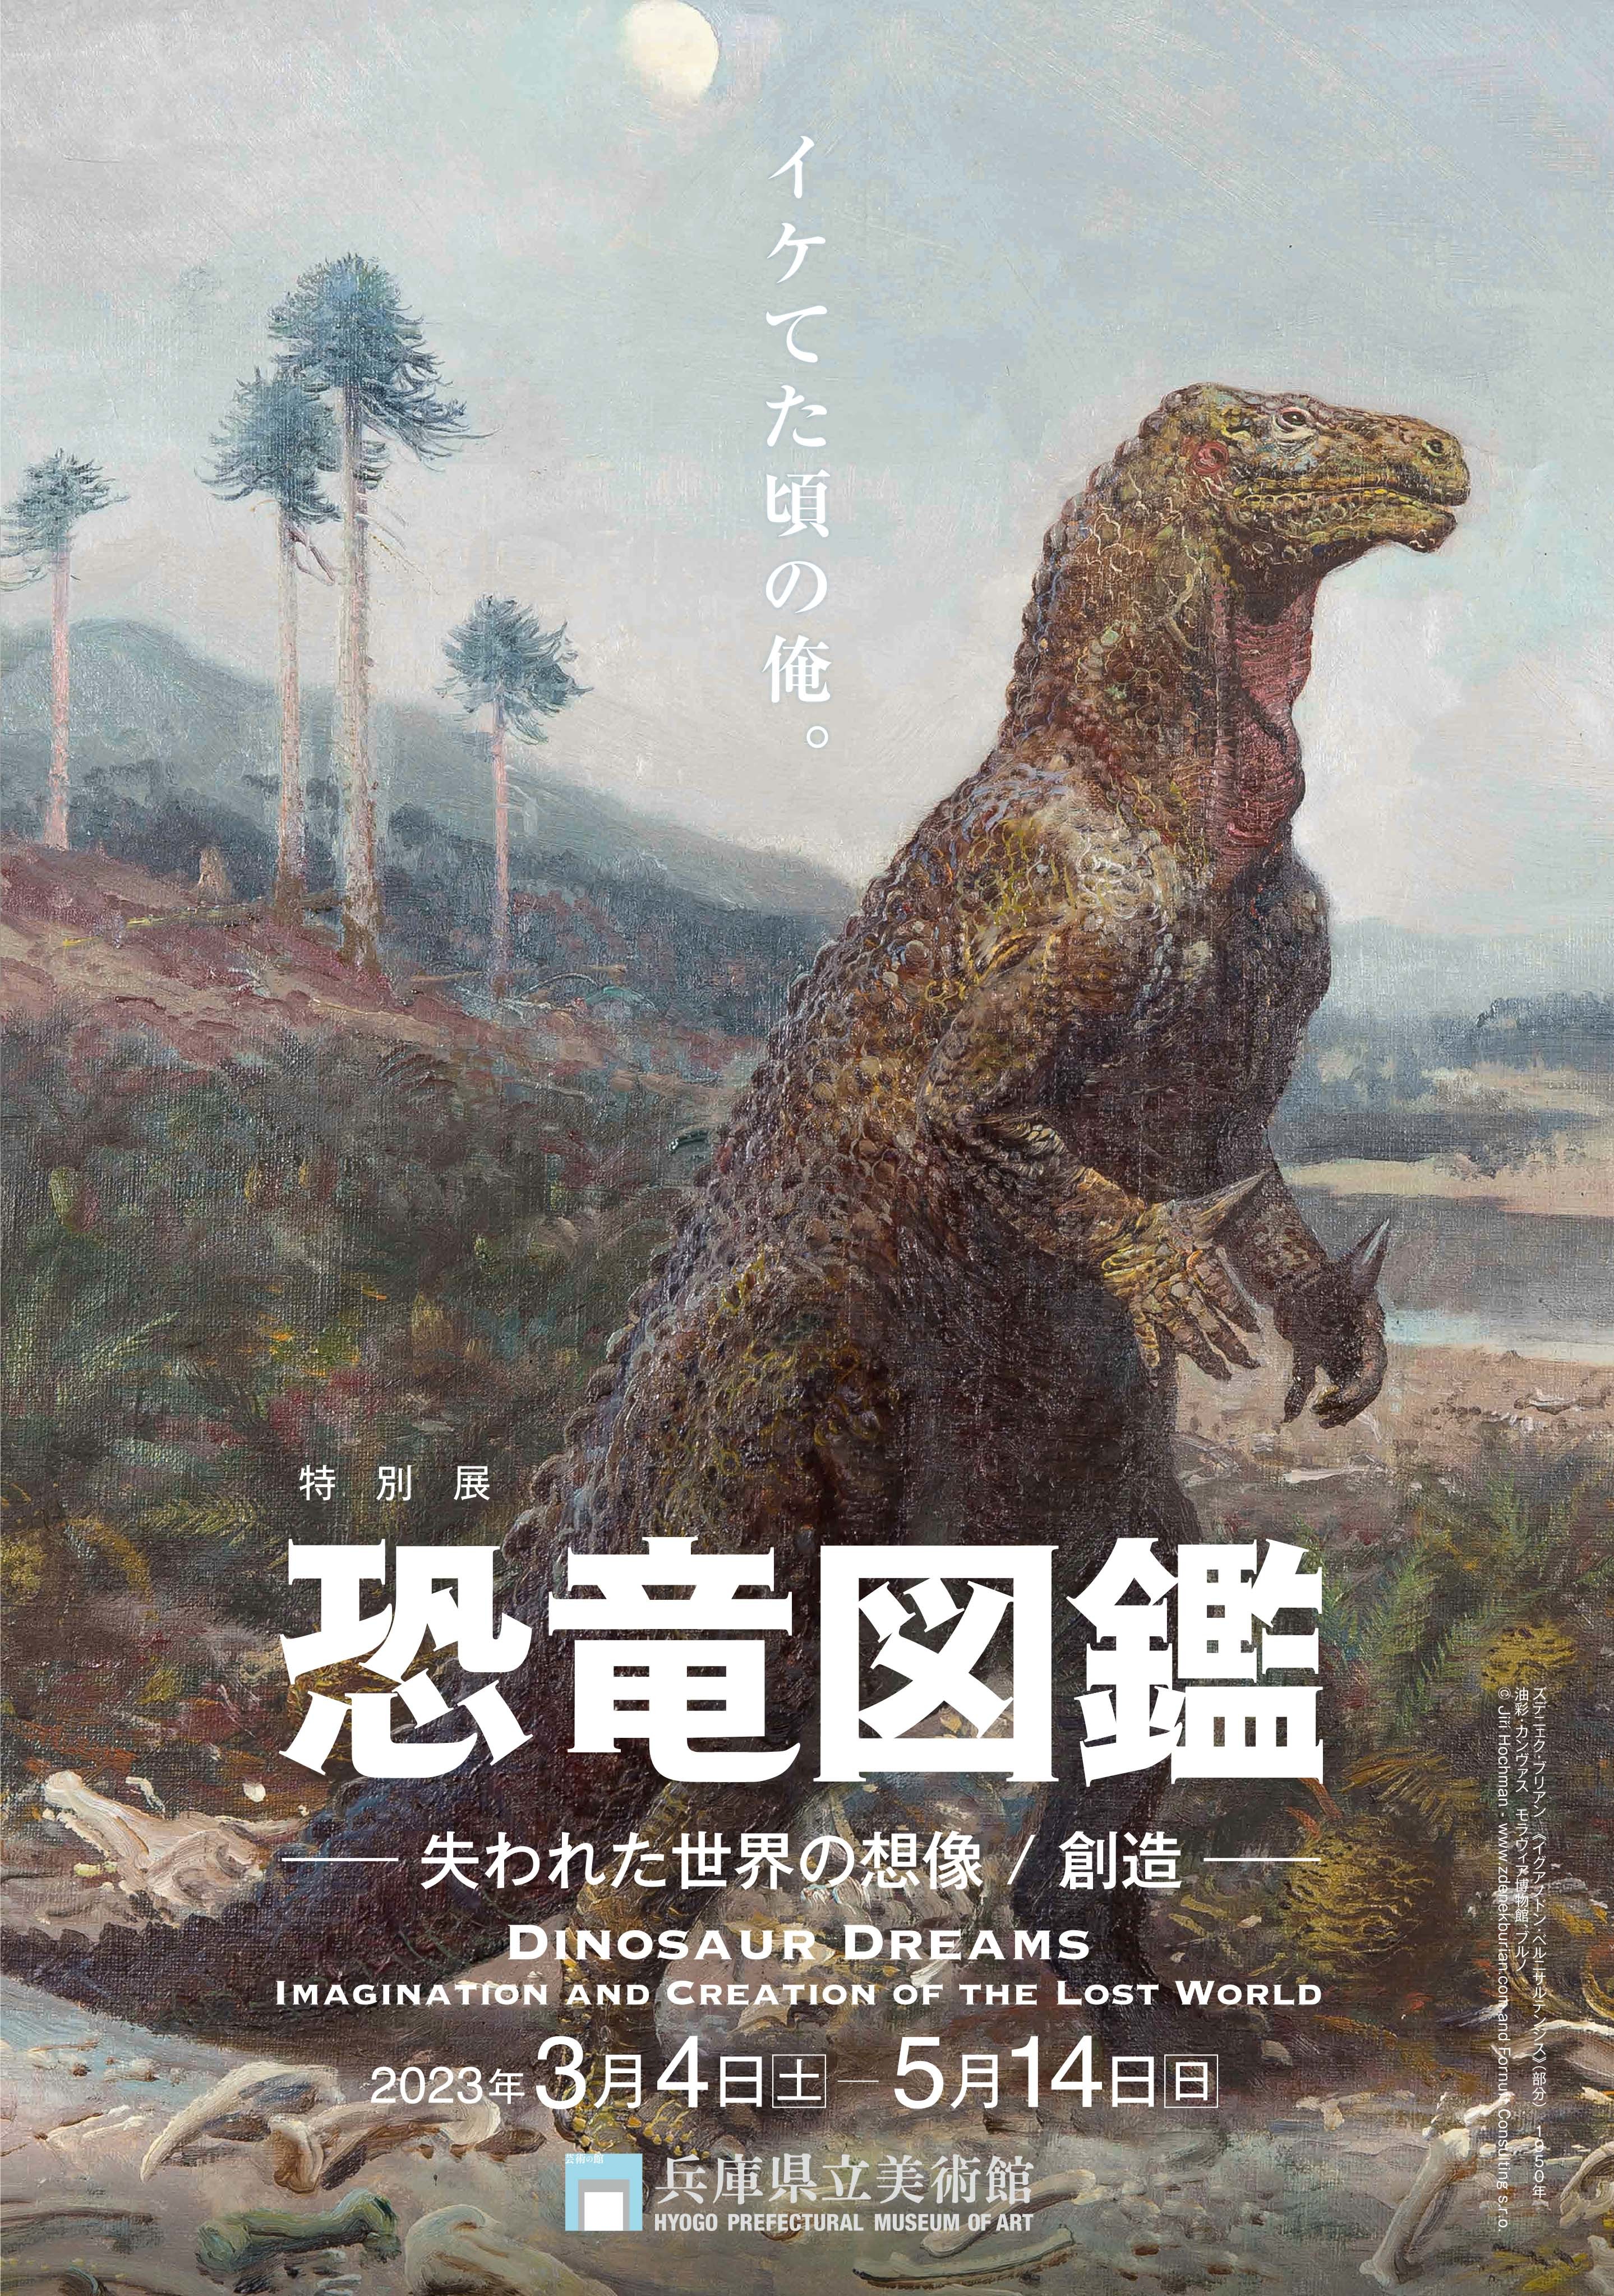 特別展『恐竜図鑑―​失われた世界の想像／創造』